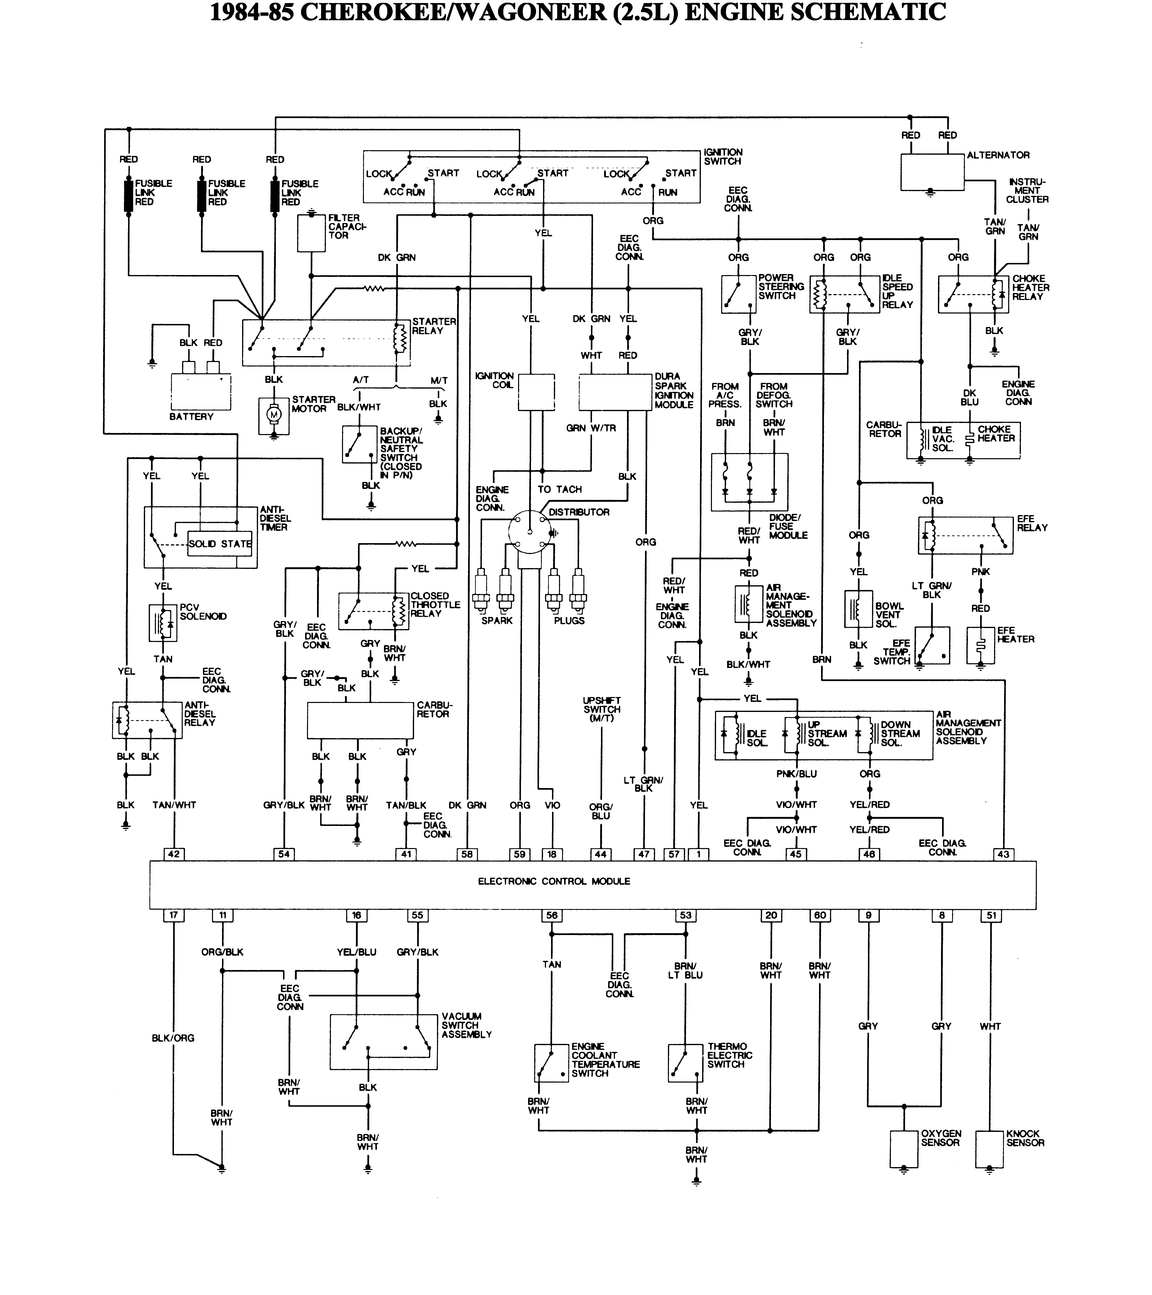 1995 Jeep Wrangler Radio Wiring Diagram from www.freeautomechanic.com